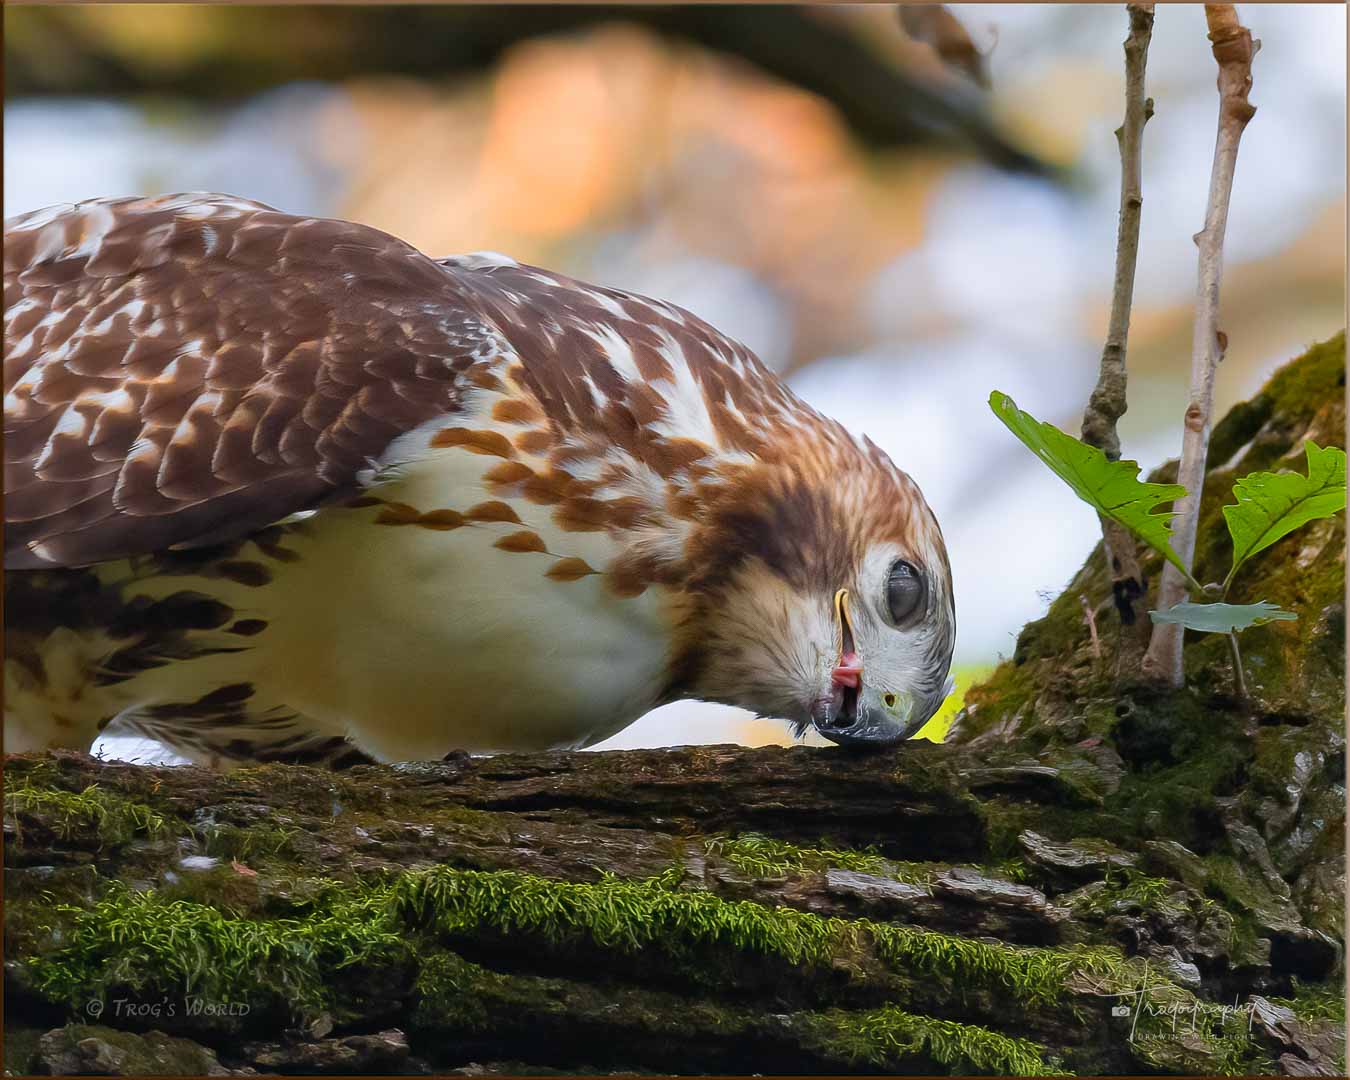 Red-tailed Hawk cleaning its beak on an oak tree